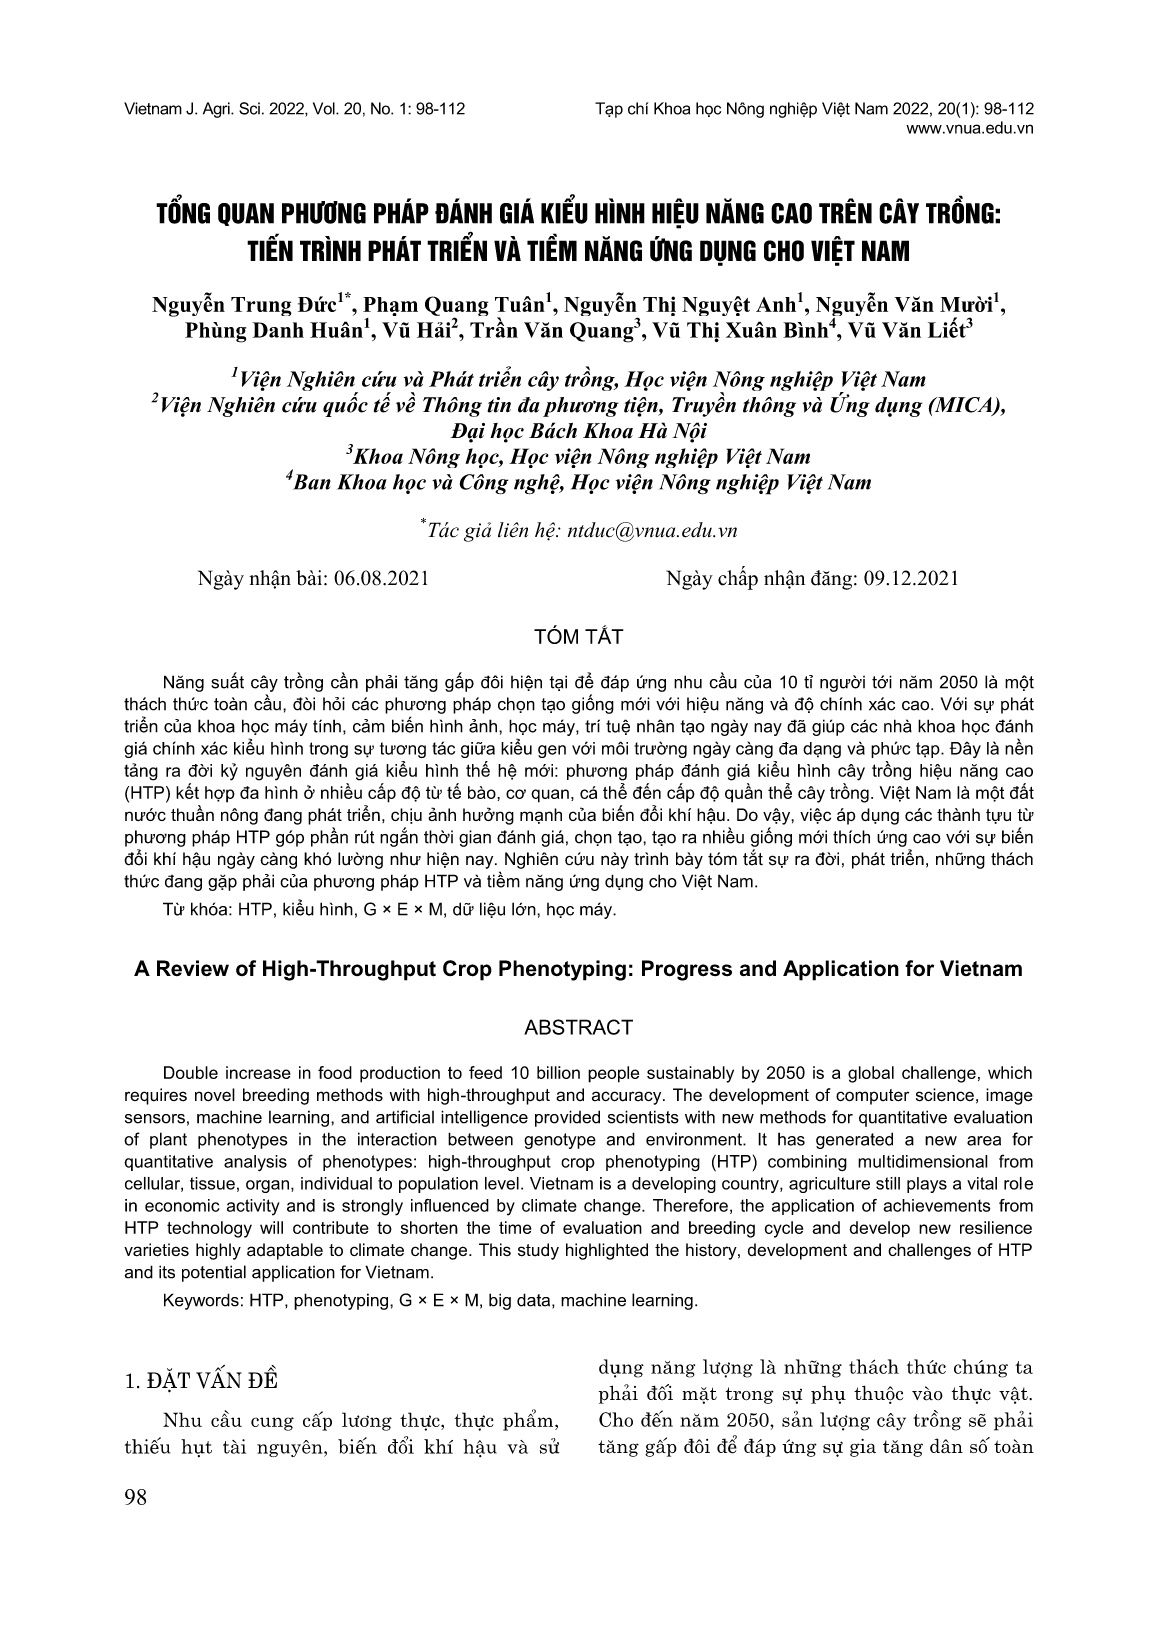 Tổng quan phương pháp đánh giá kiểu hình hiệu năng cao trên cây trồng: Tiến trình phát triển và tiềm năng ứng dụng cho Việt Nam trang 1